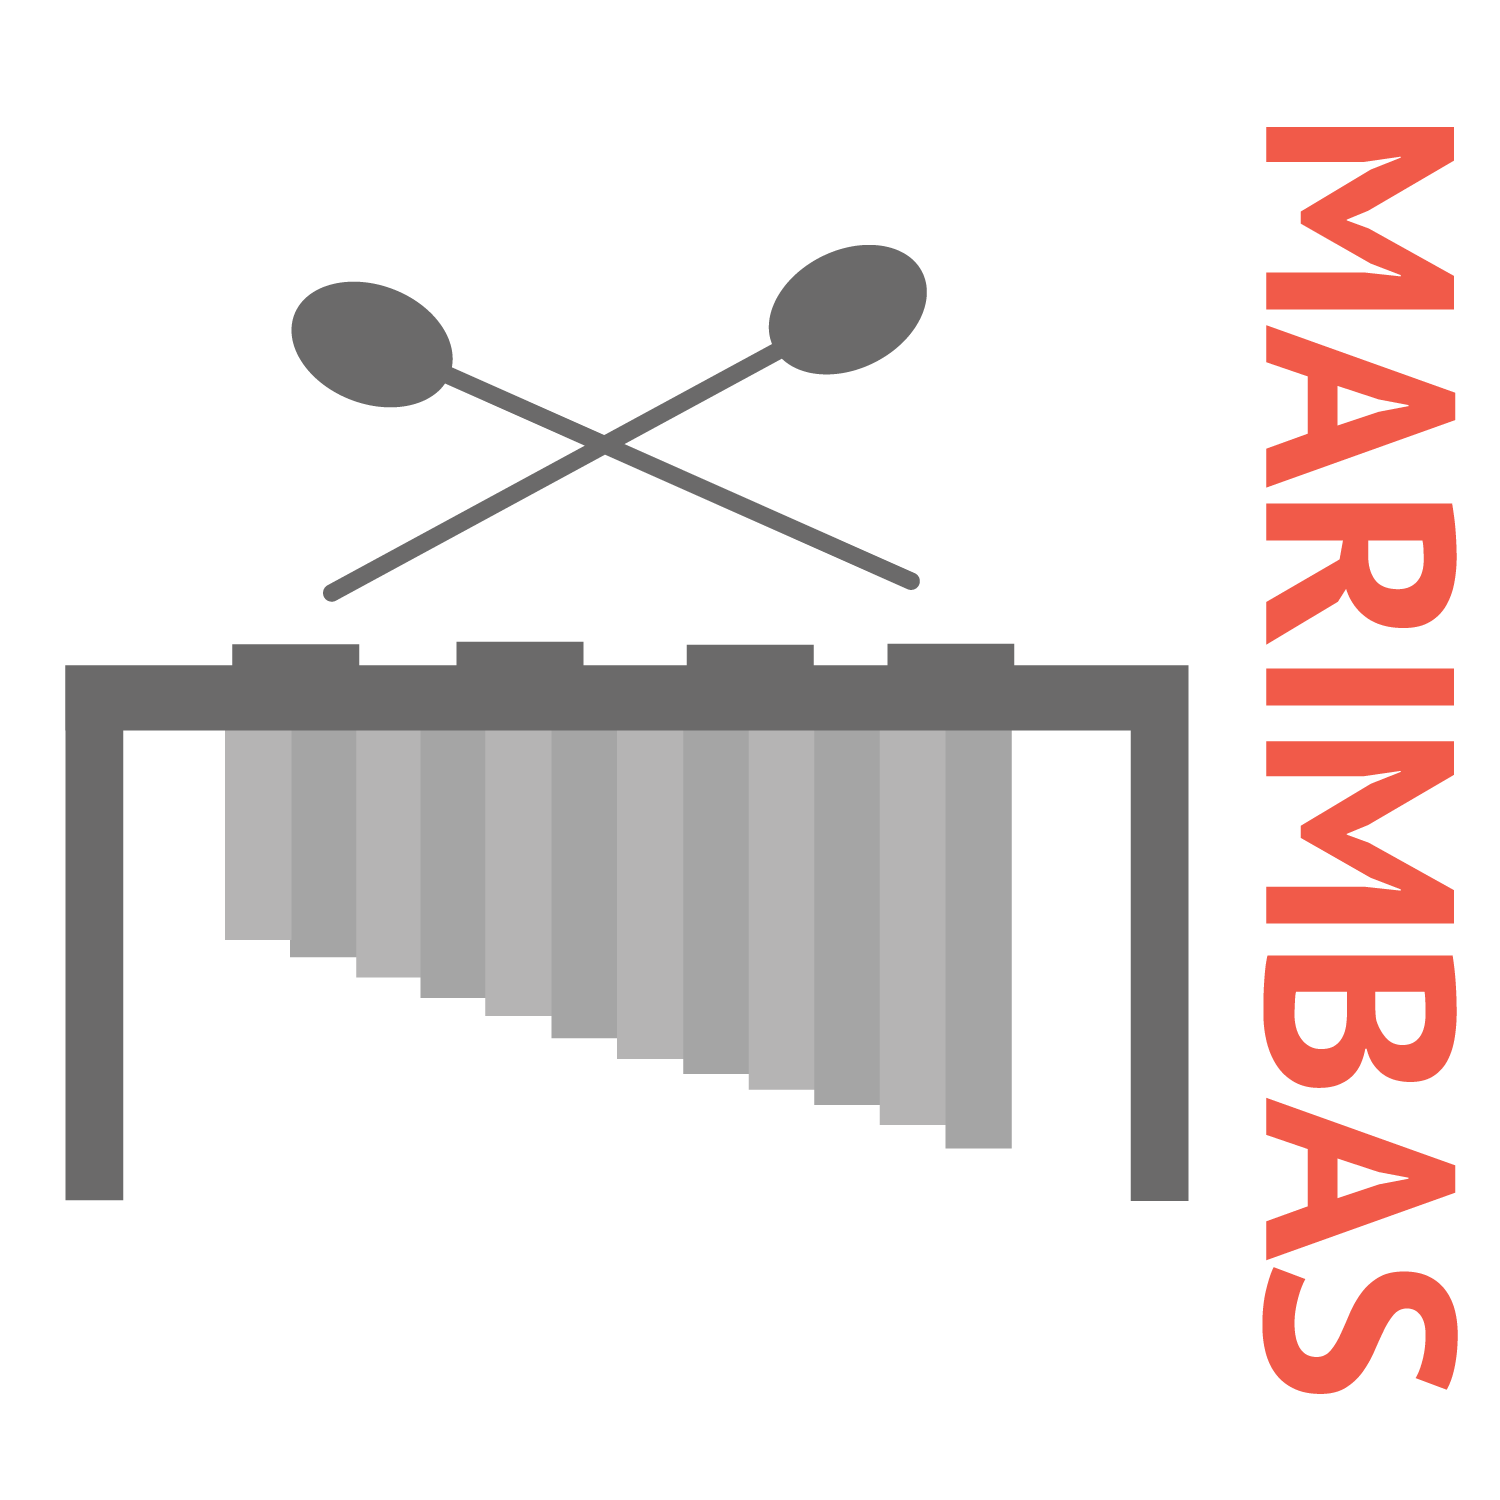 Marimbas